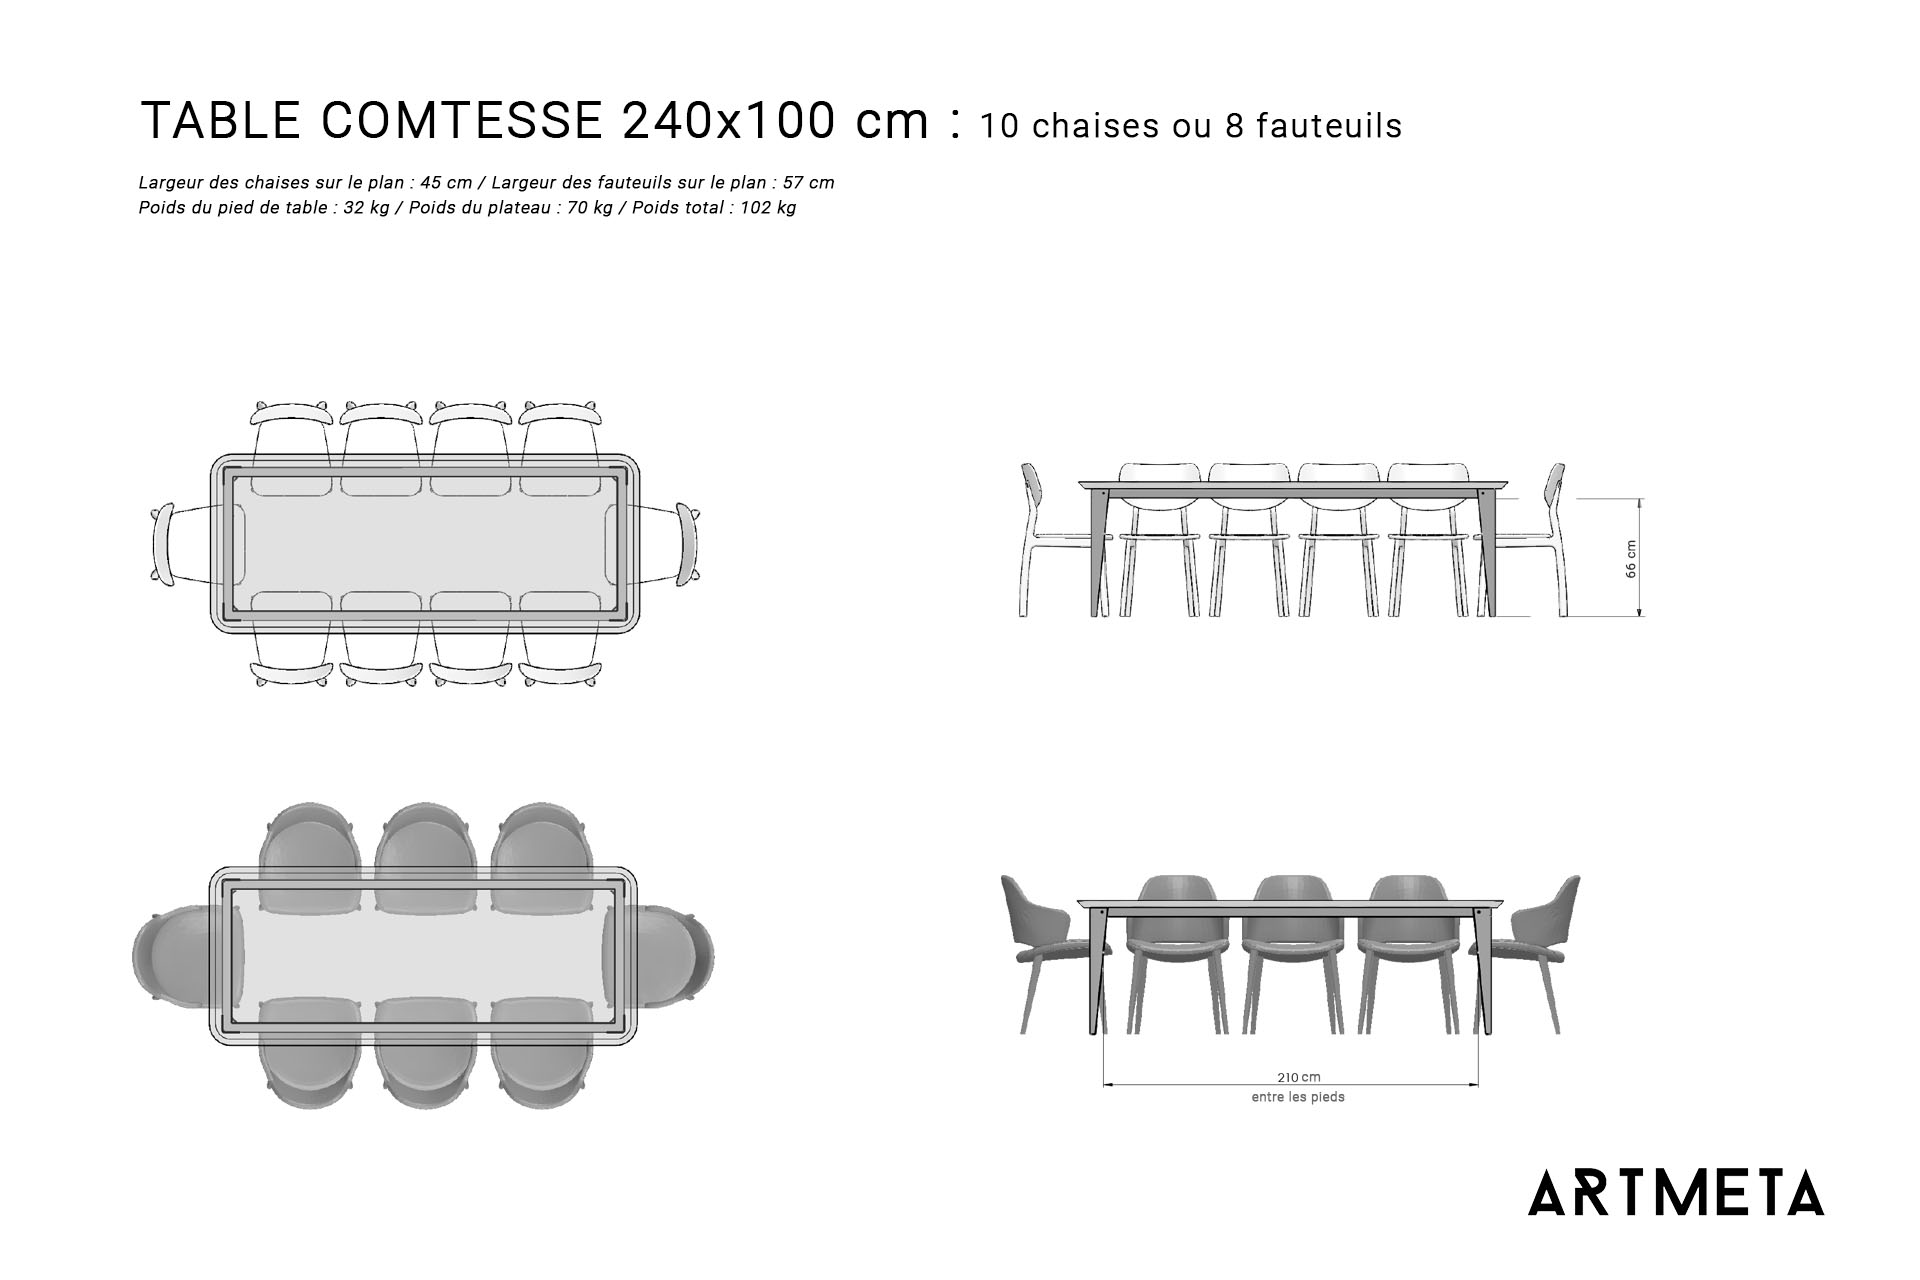 Guide des dimensions / Table à manger pour 8 à 10 personnes / Table en métal et bois modèle Comtesse / Fabrication française ARTMETA